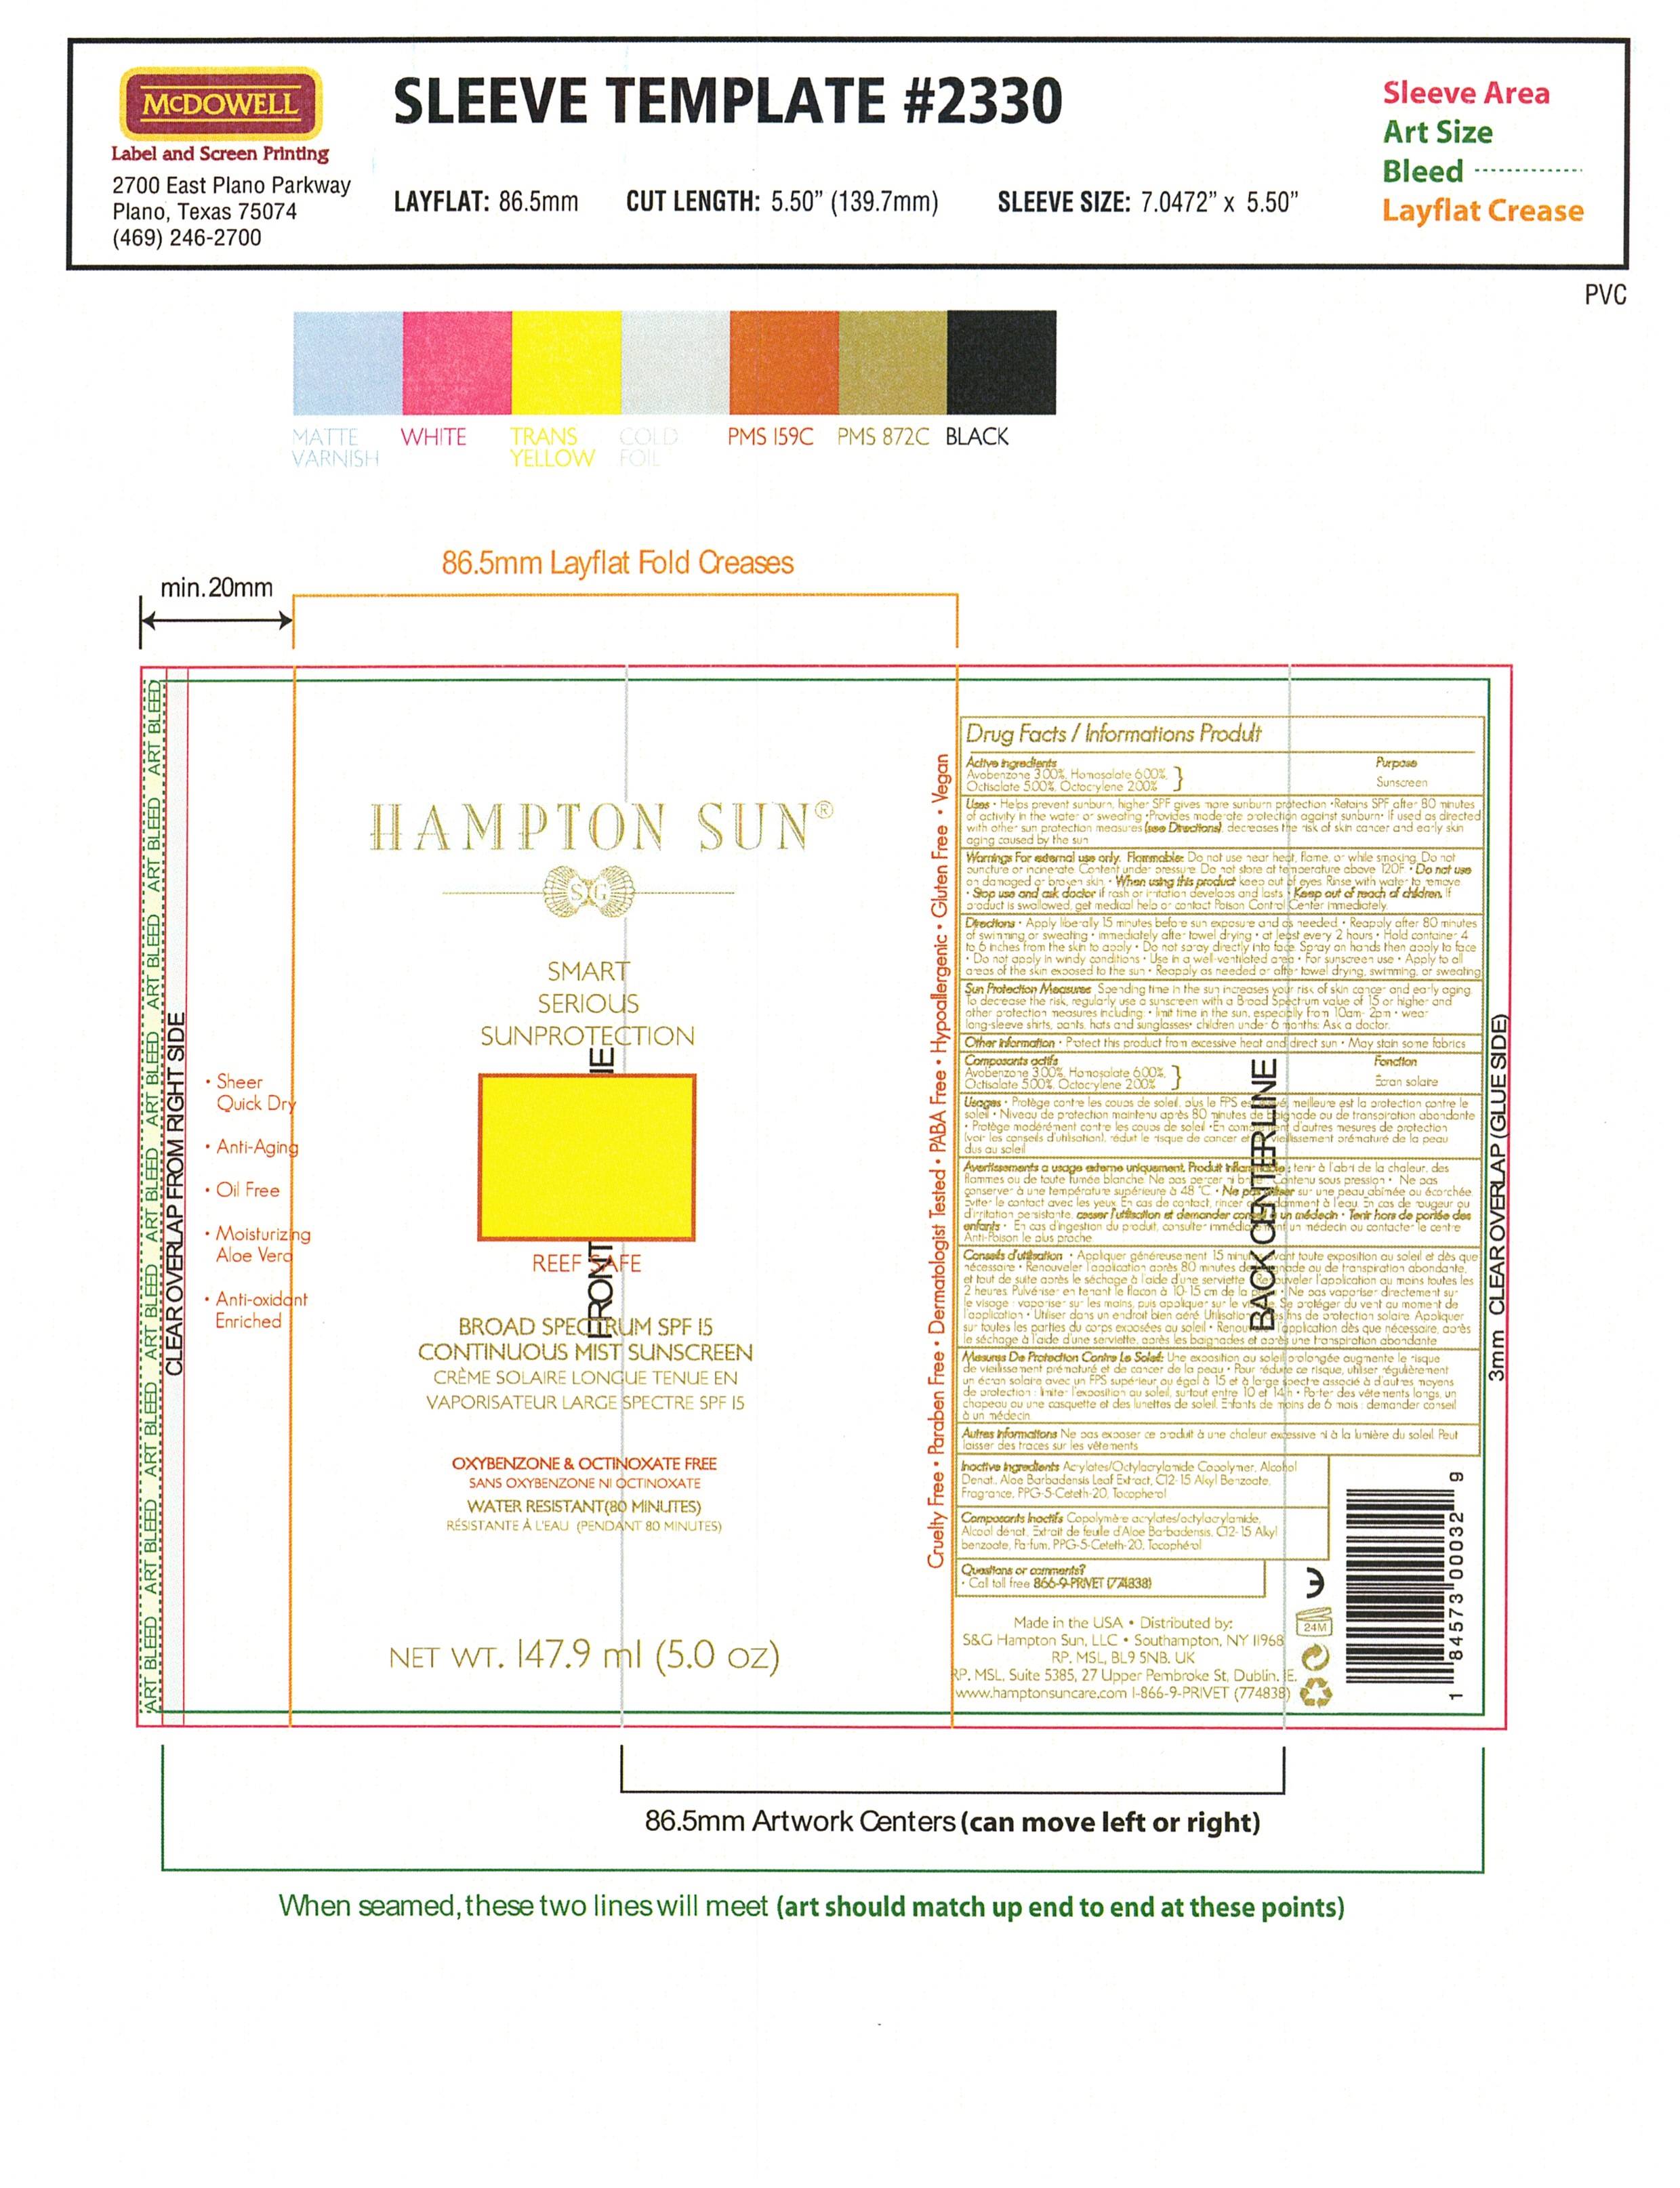 Hampton Sun SPF 15 Sunscreen